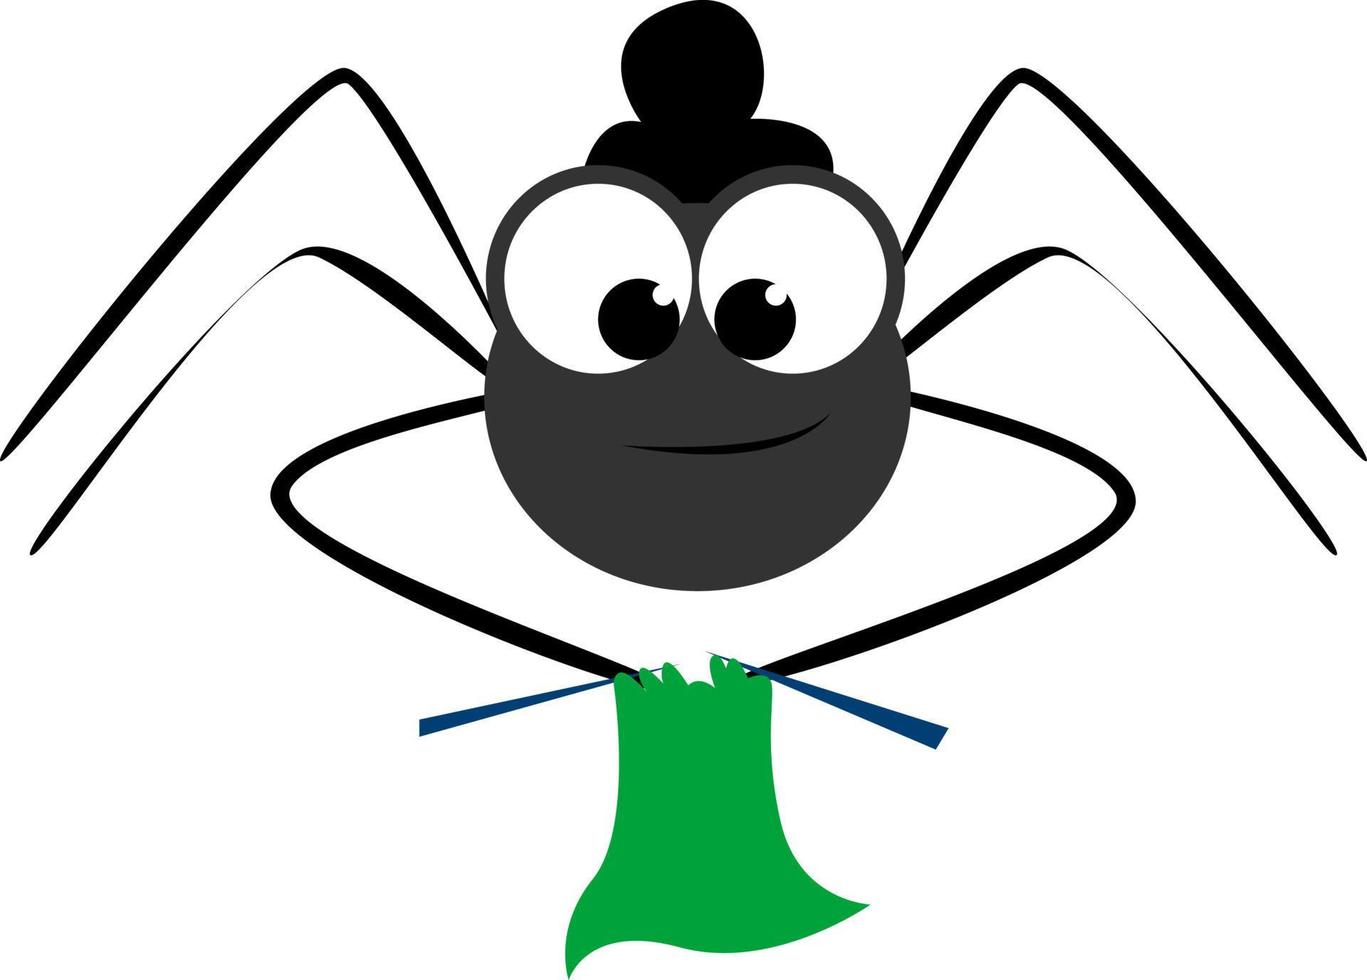 Granny spider, illustration, vector on white background.